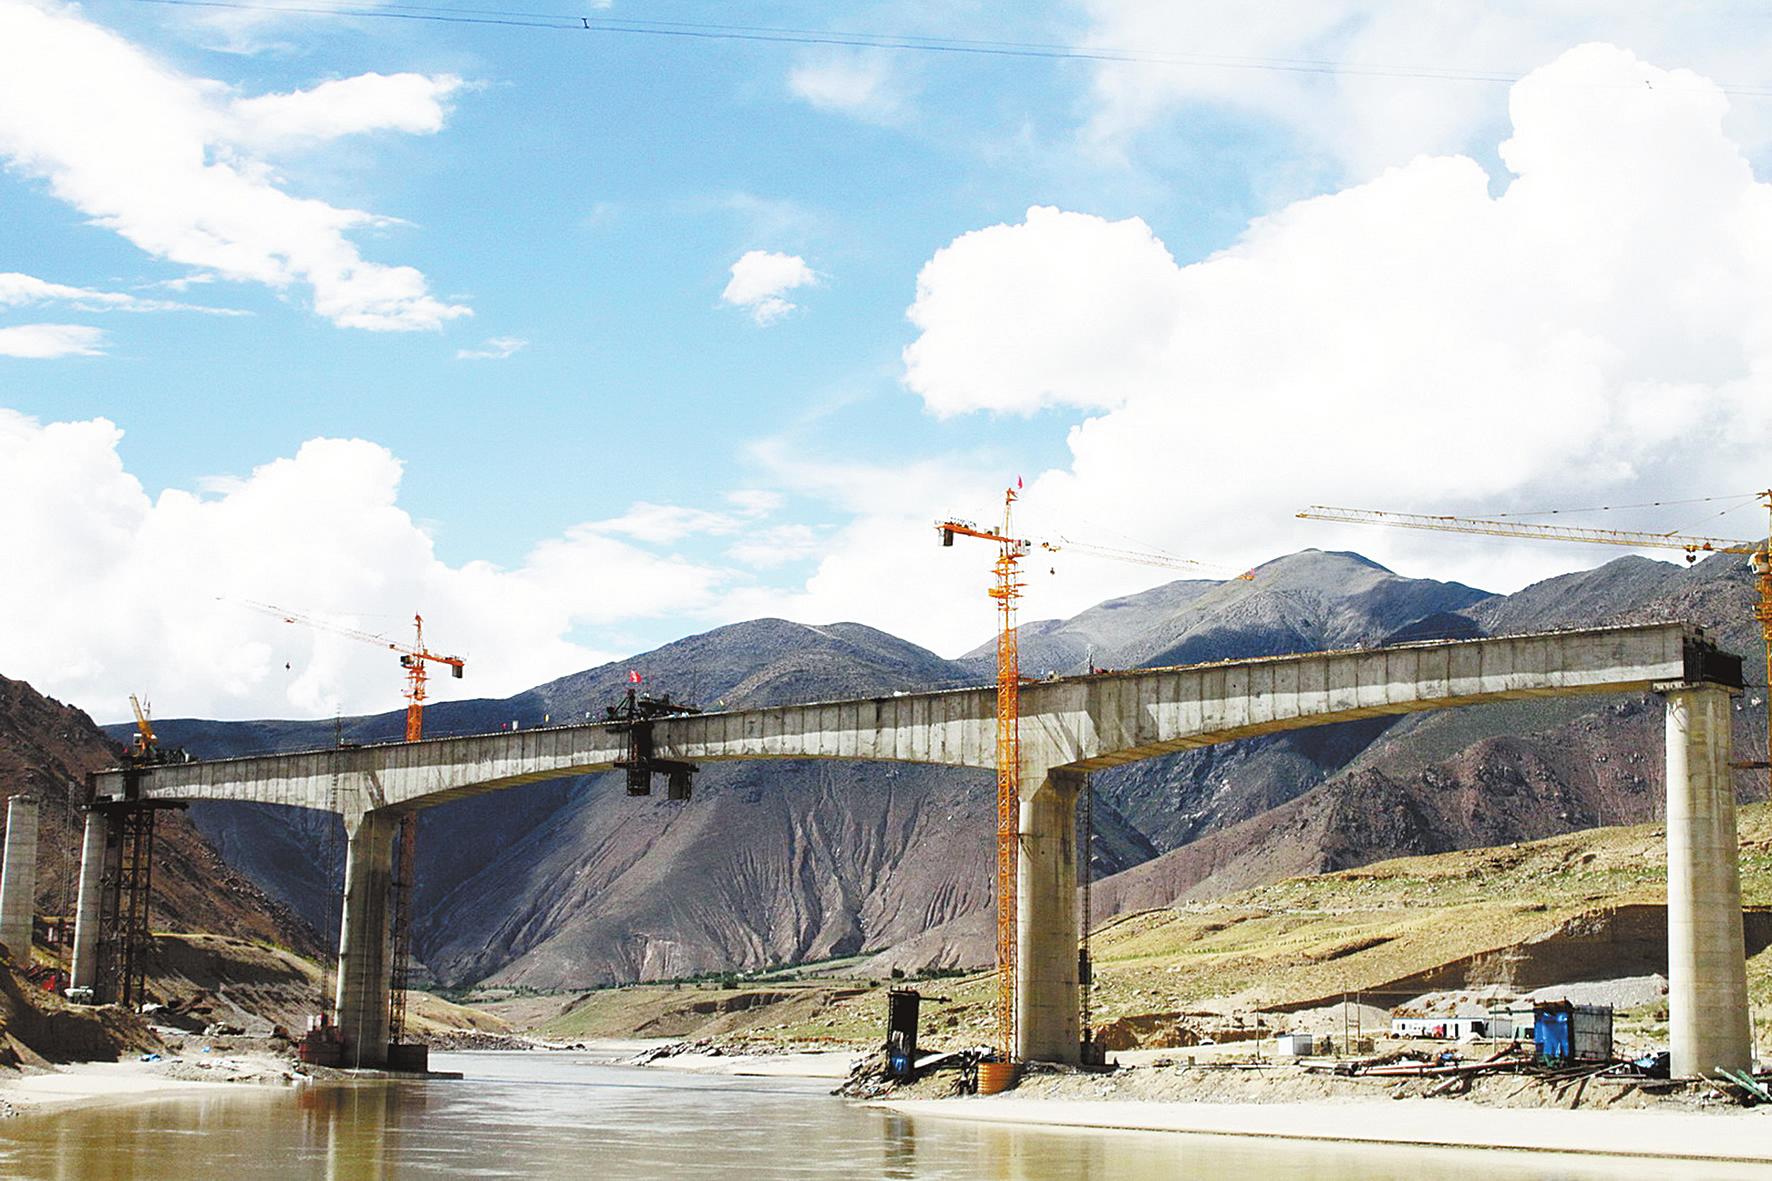 Lhasa-Shigatse Railway